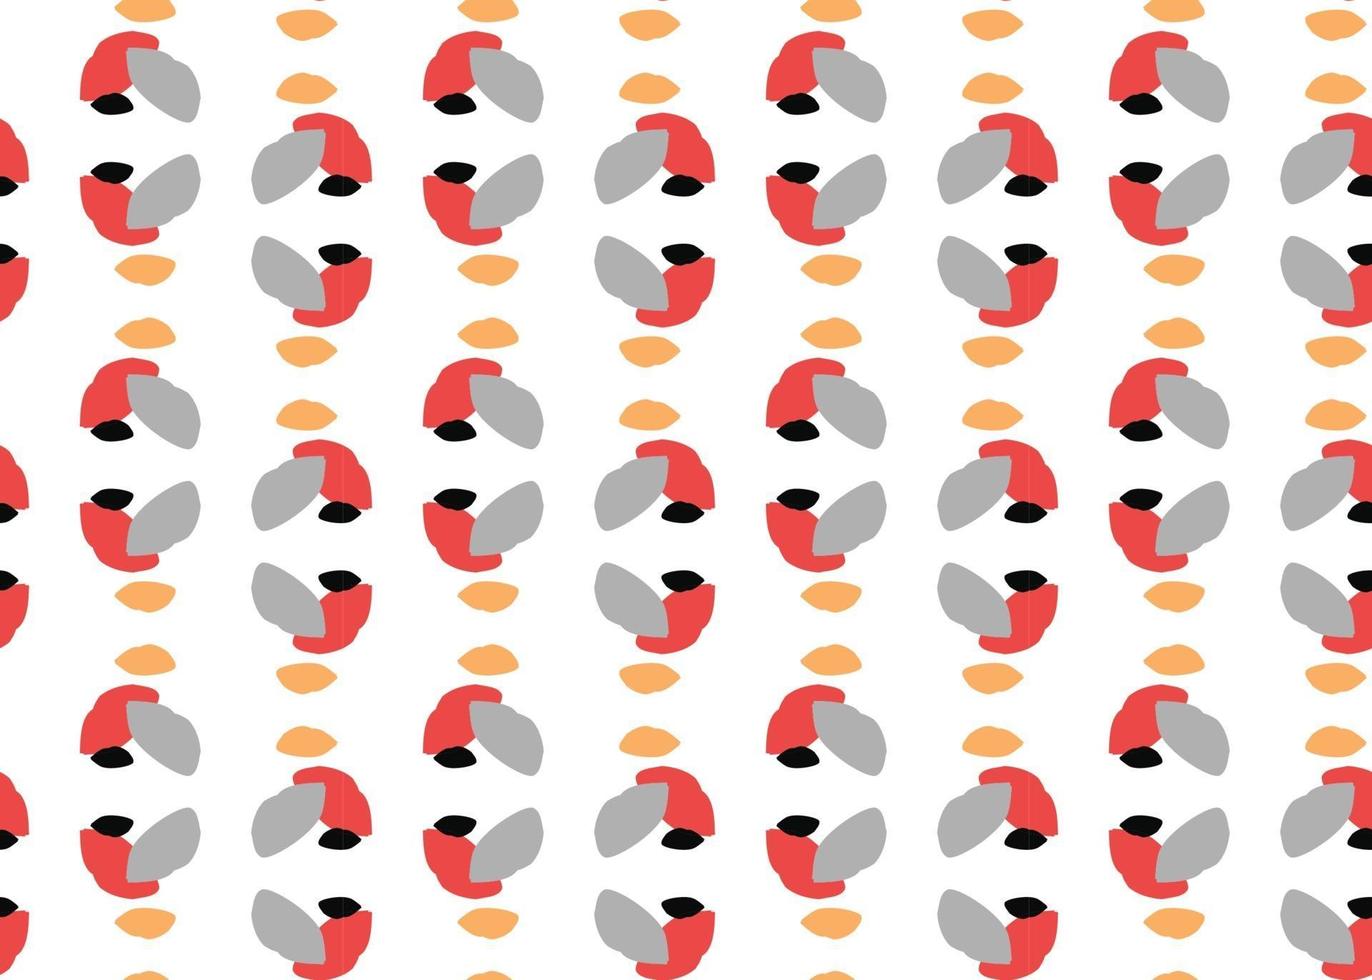 Vektor Textur Hintergrund, nahtloses Muster. handgezeichnete, graue, rote, schwarze, orange, weiße Farben.